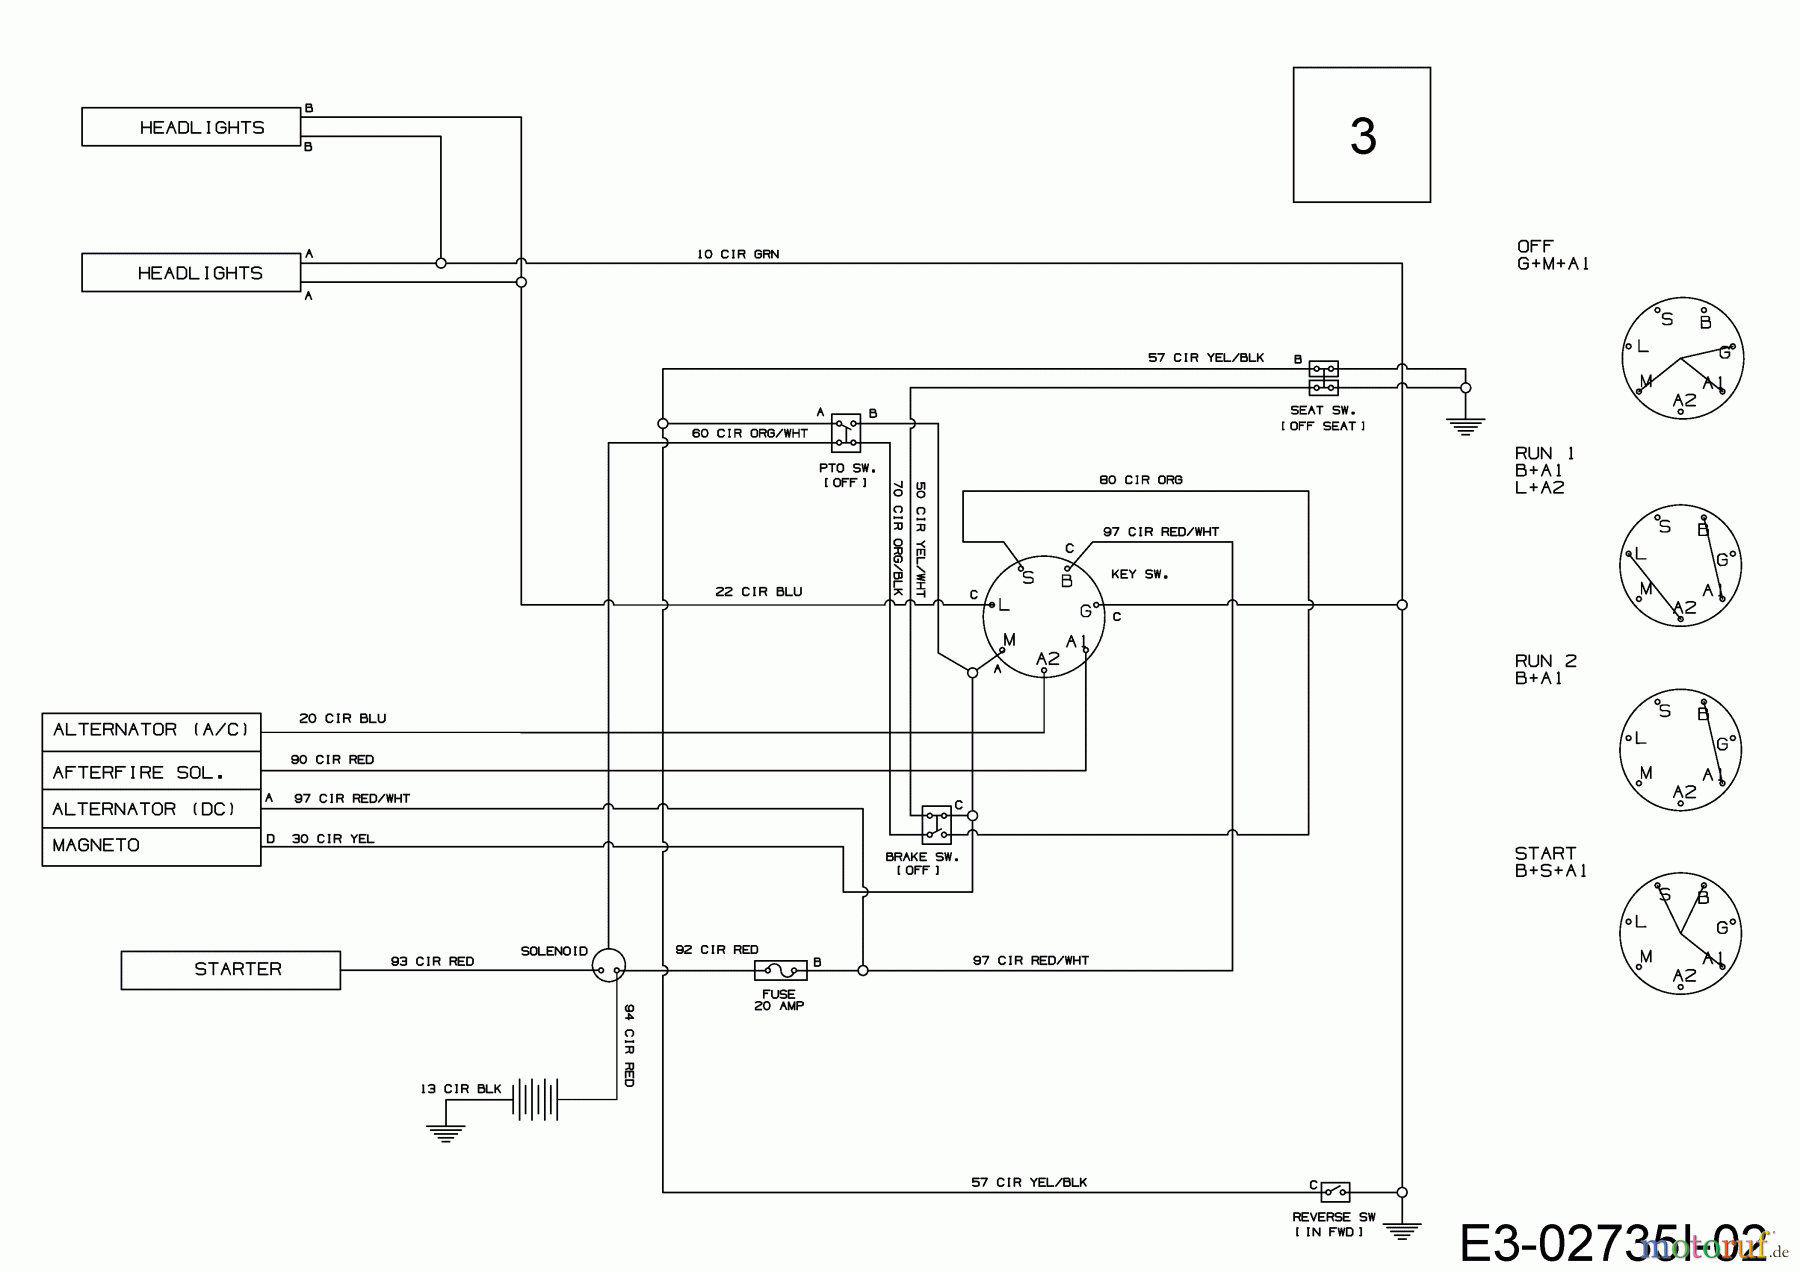  Tigara Lawn tractors TG 22/107 HBI 13IT79KG649  (2019) Wiring diagram